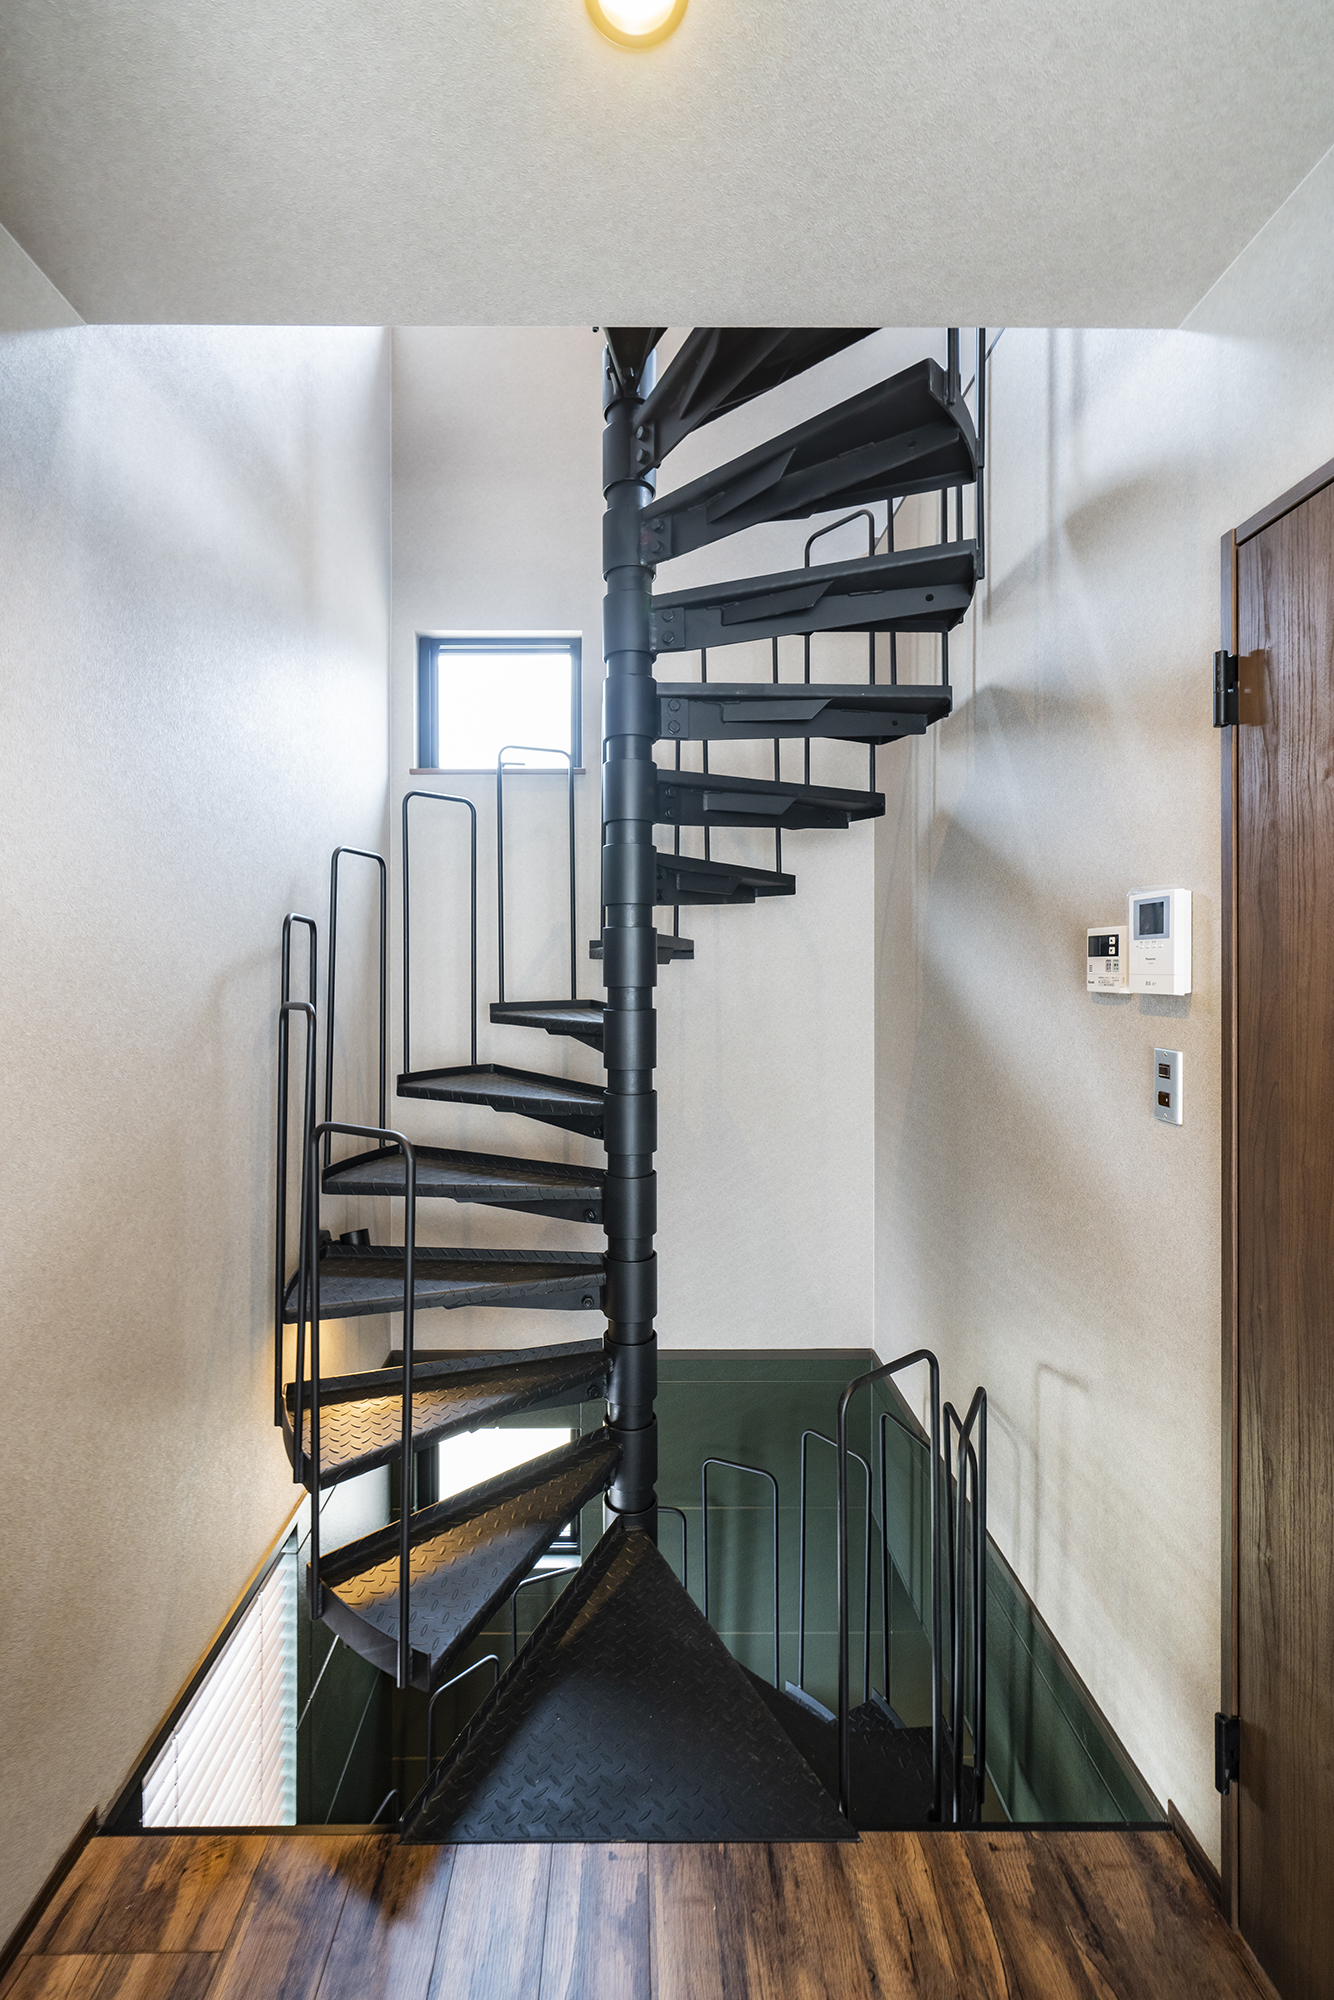 鋼鉄製の螺旋階段が上下階を繋ぎ、自然光を各階の隅々にまで届けている